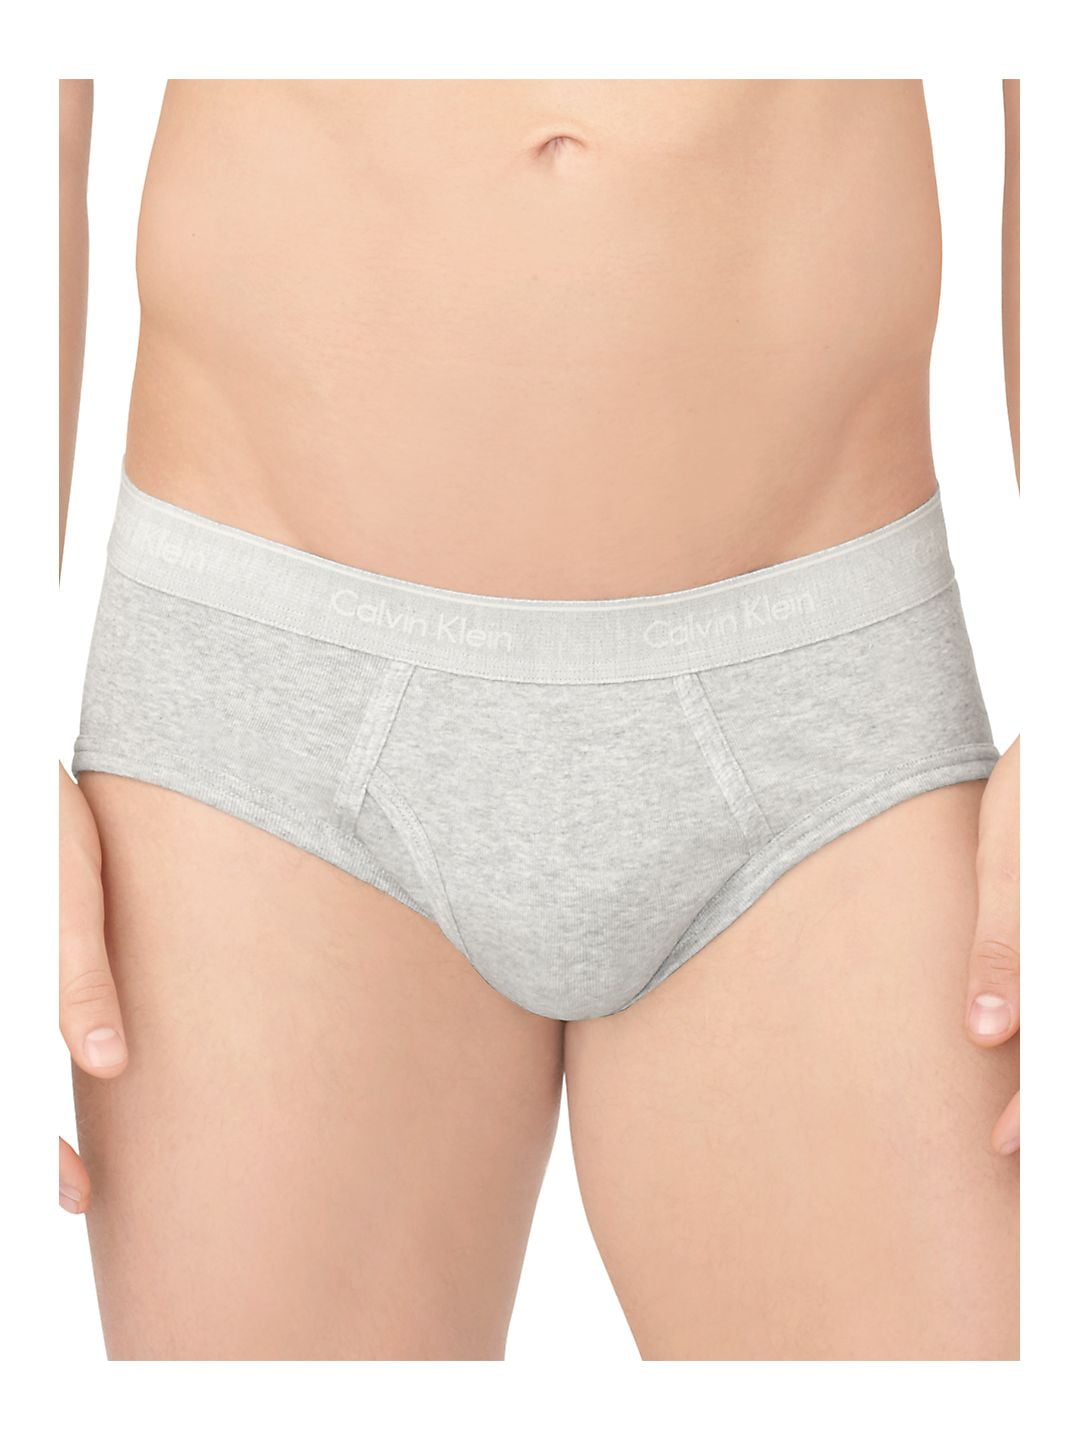 Calvin Klein Men's Underwear CK One Cotton Hip Briefs, Black/Grey  Heather/White, M at  Men's Clothing store